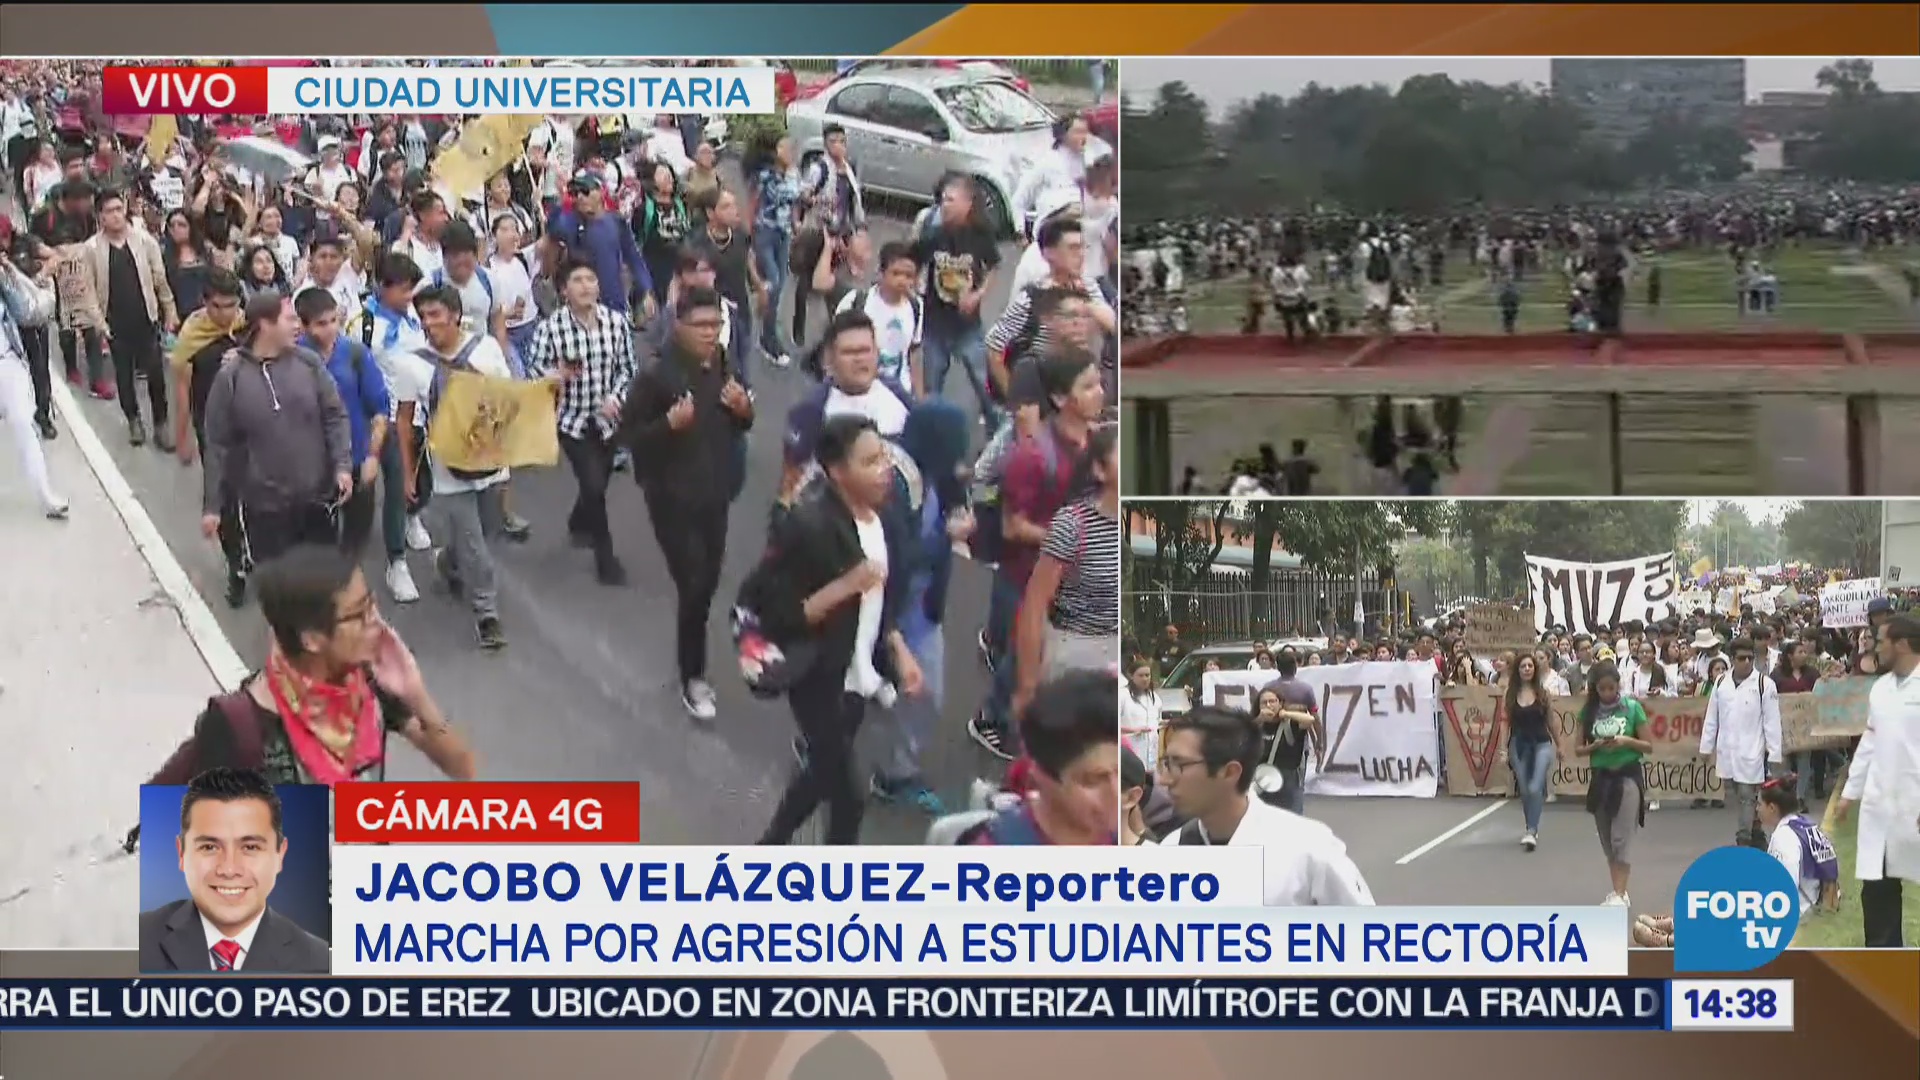 Llegan Estudiantes Rectoría UNAM Manifestarse